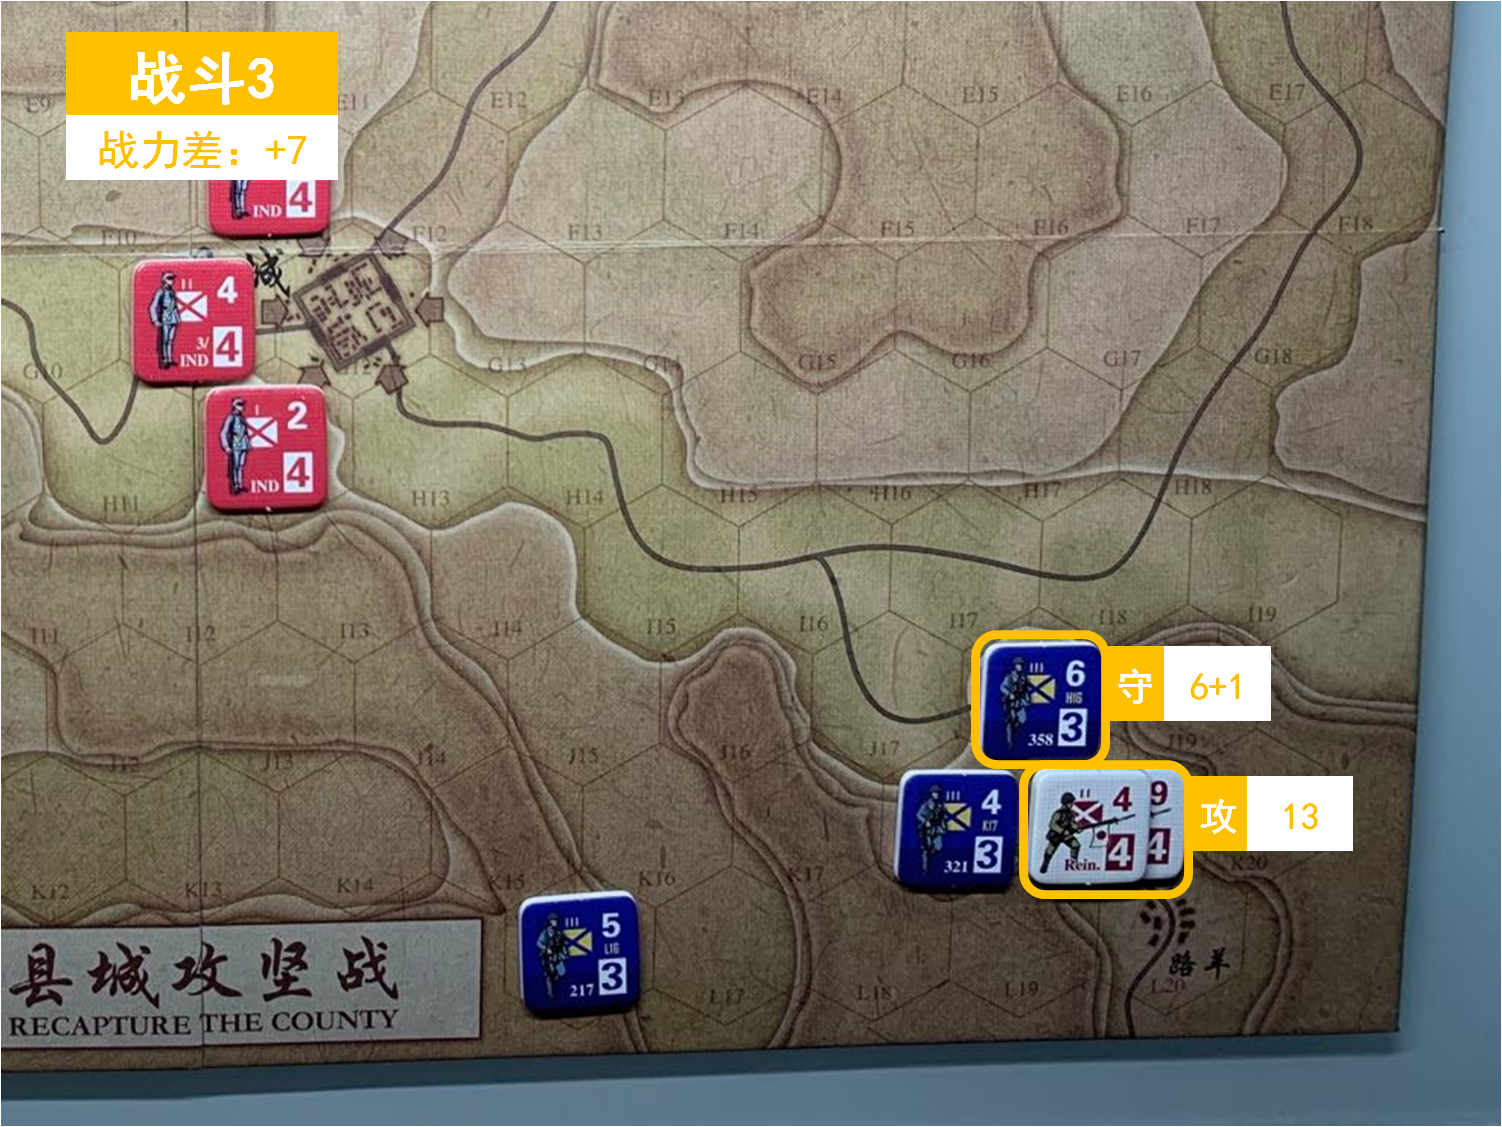 第一回合 日方战斗阶段 战斗3 战斗力差值